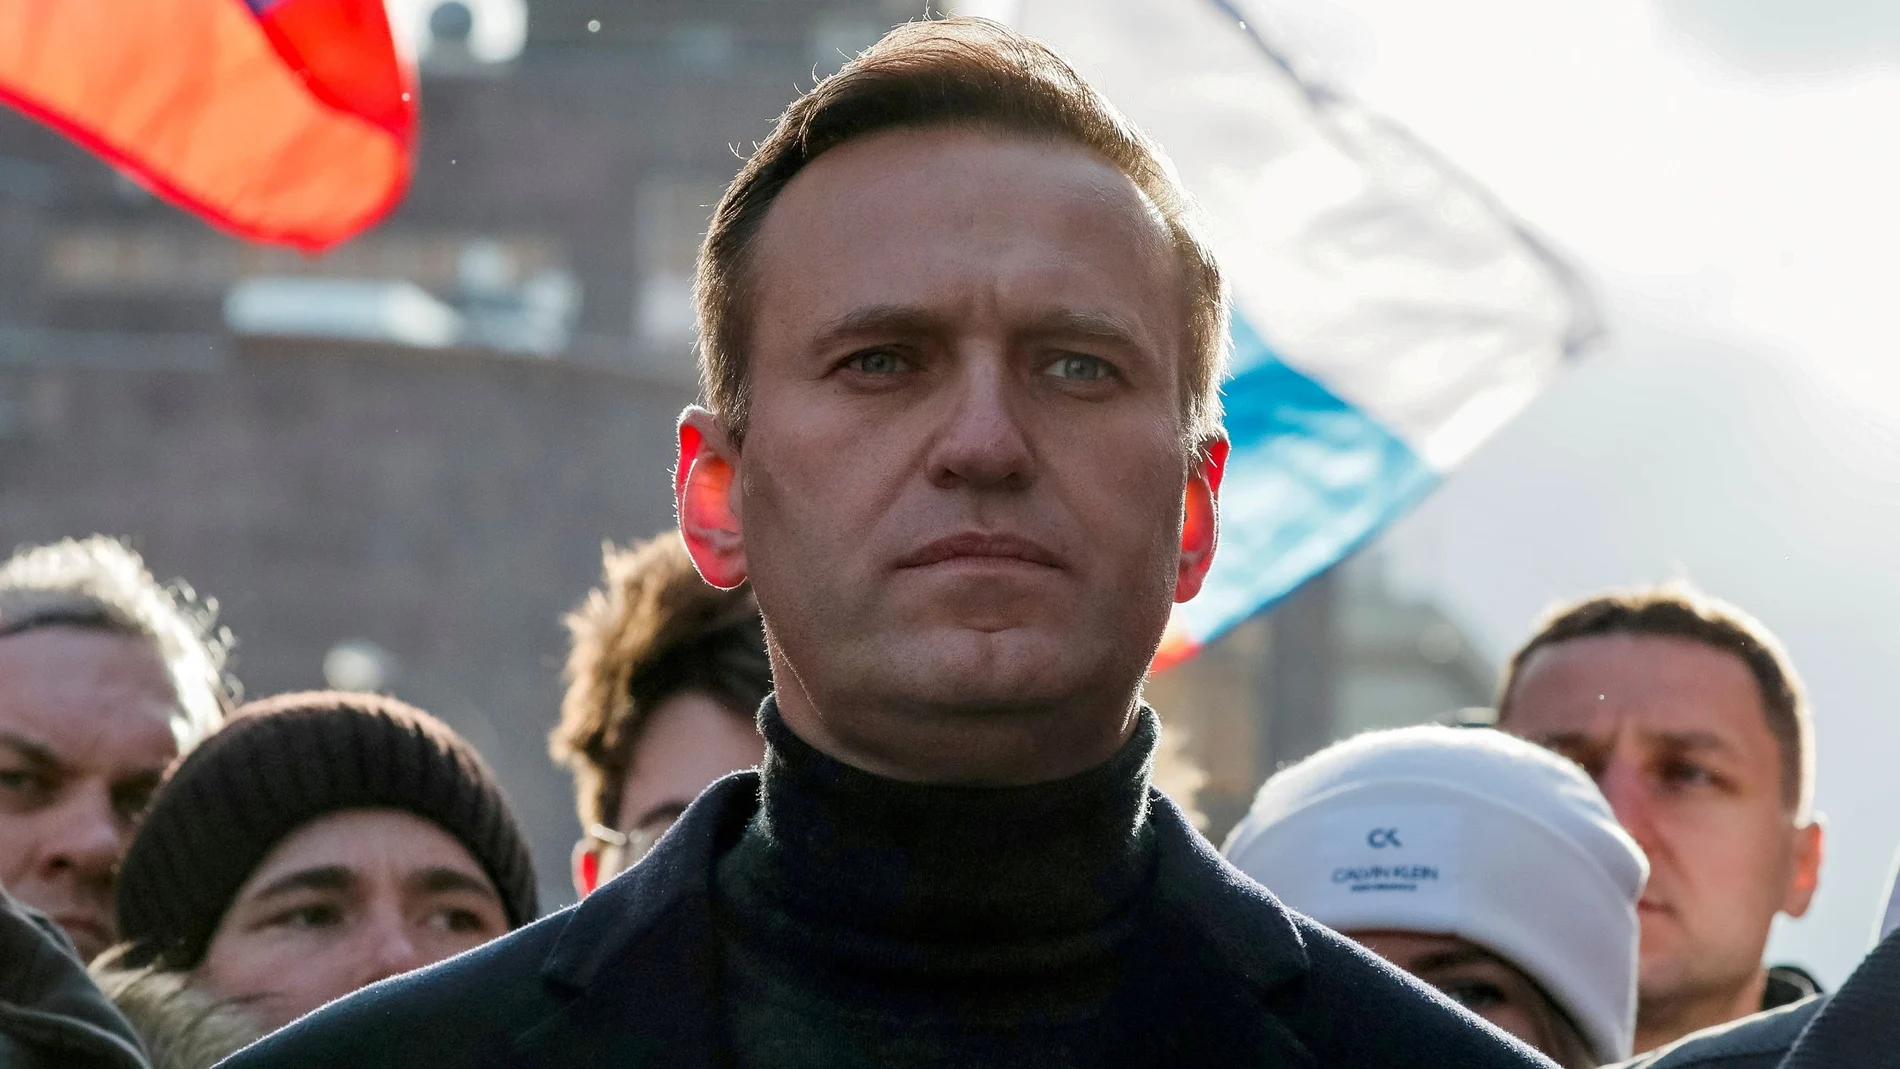 El propio Navalny está cumpliendo 2 años y medio de prisión por violar los términos de su libertad condicional por una condena por malversación de fondos en 2014